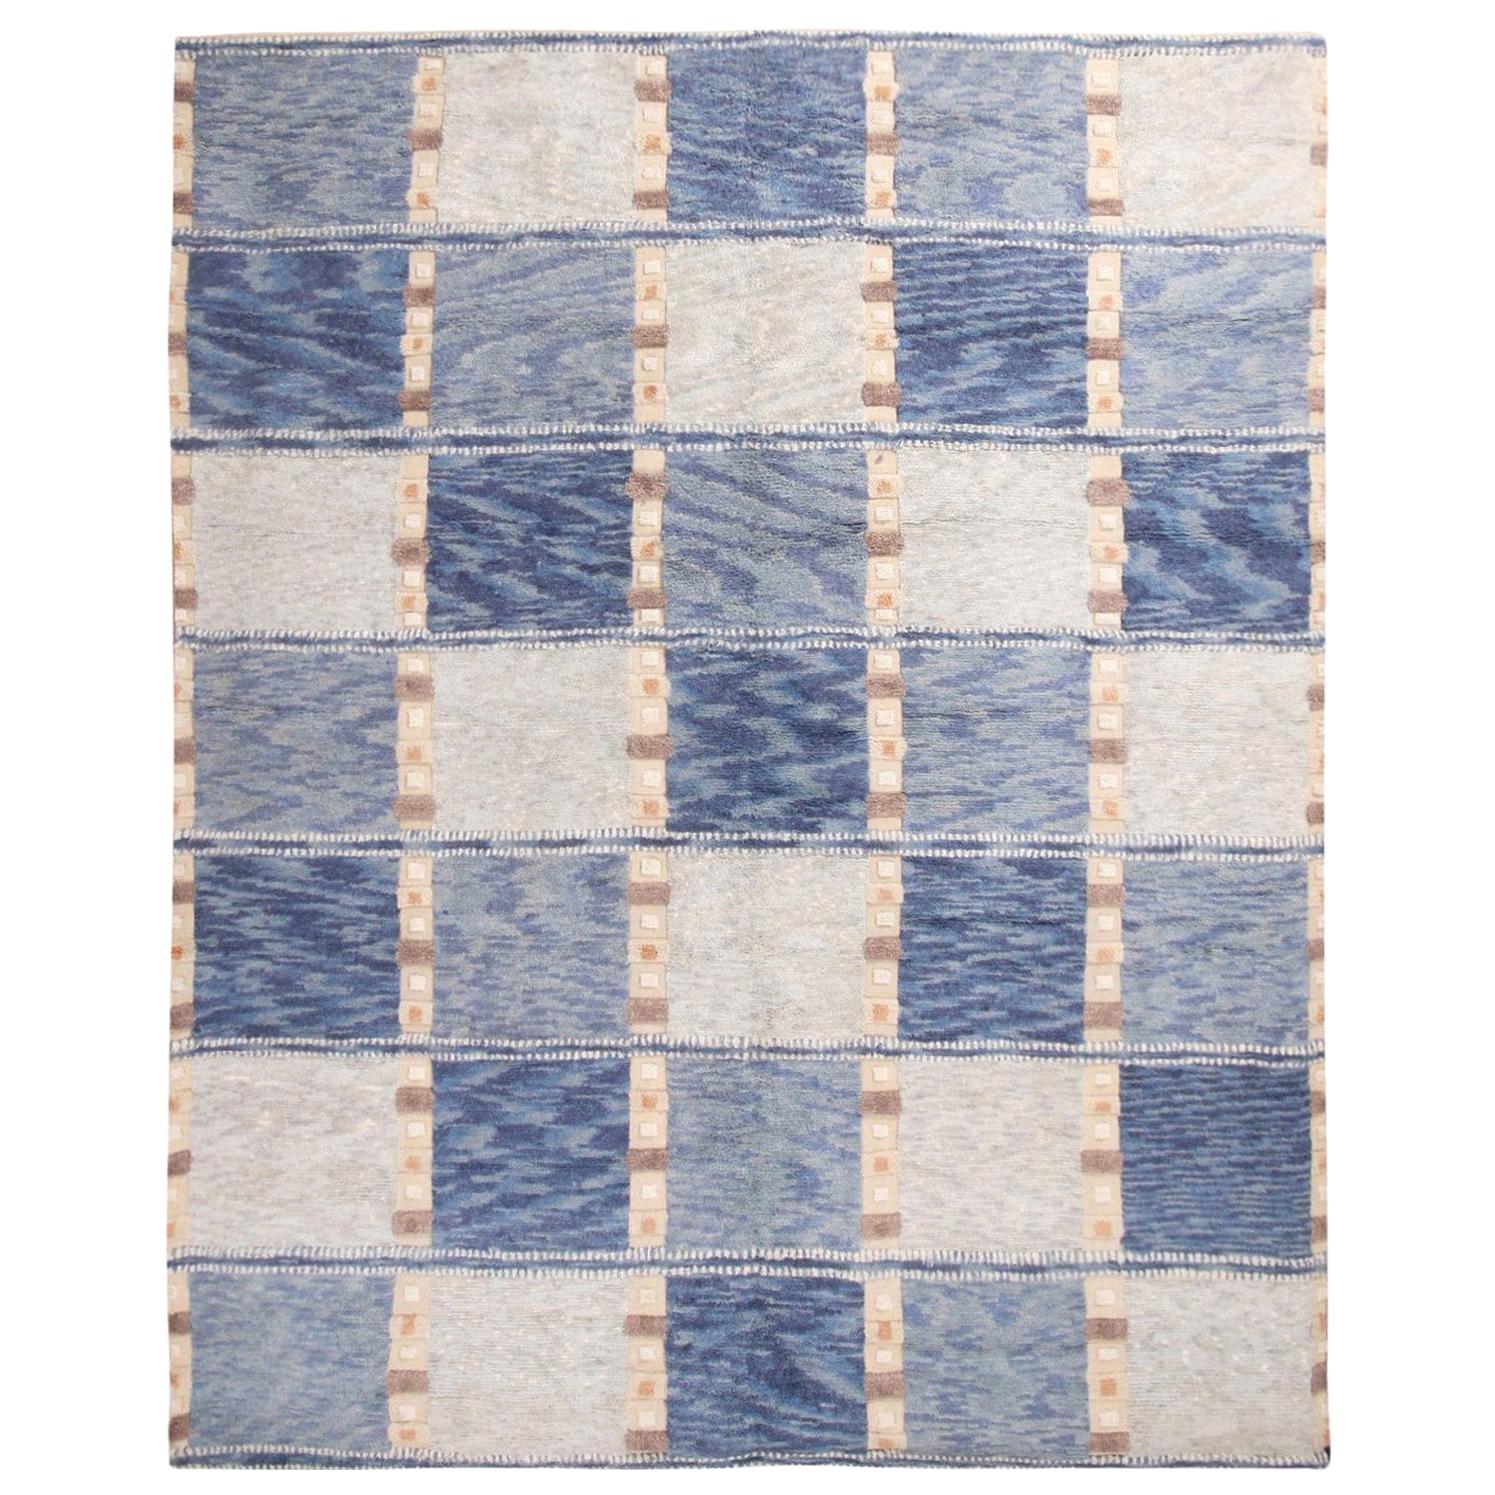 Skandinavisch inspirierter geometrischer grauer und blauer Wollflorteppich von Teppich & Kilims